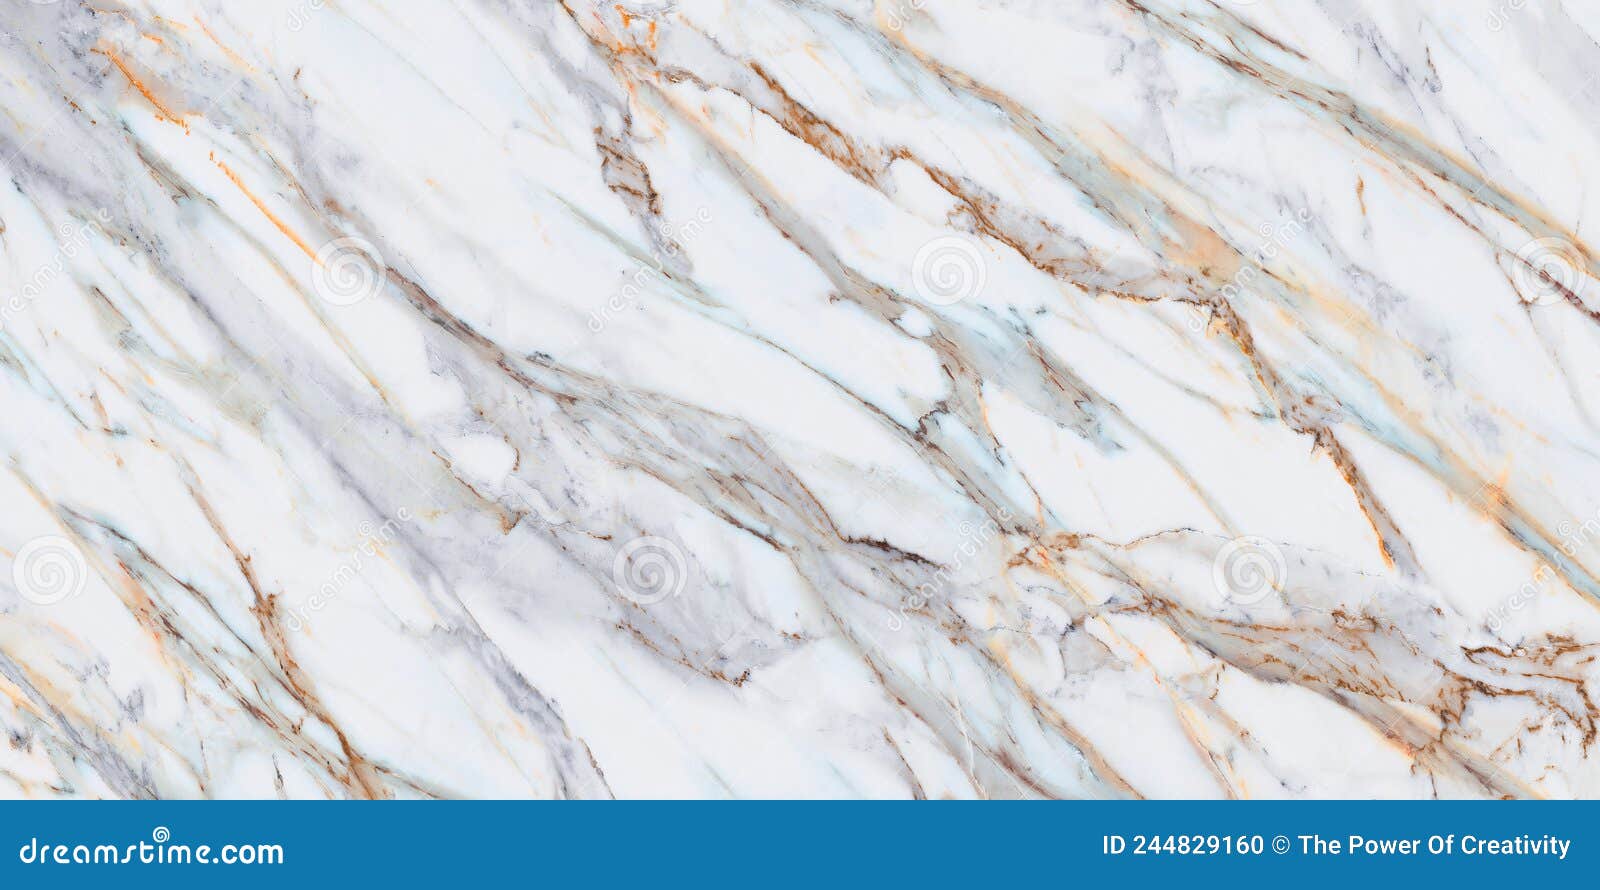 Nền đá hoa Carrara cho tường trang trí giúp tạo ra một không gian sống hiện đại và độc đáo. Với độ bóng và màu trắng tinh khôi, nền đá này sẽ tạo nên một cảm giác bình yên và thanh lịch cho không gian sống của bạn. Hãy xem hình ảnh liên quan để tìm hiểu thêm về sản phẩm này và ứng dụng cho không gian sống của bạn nhé!